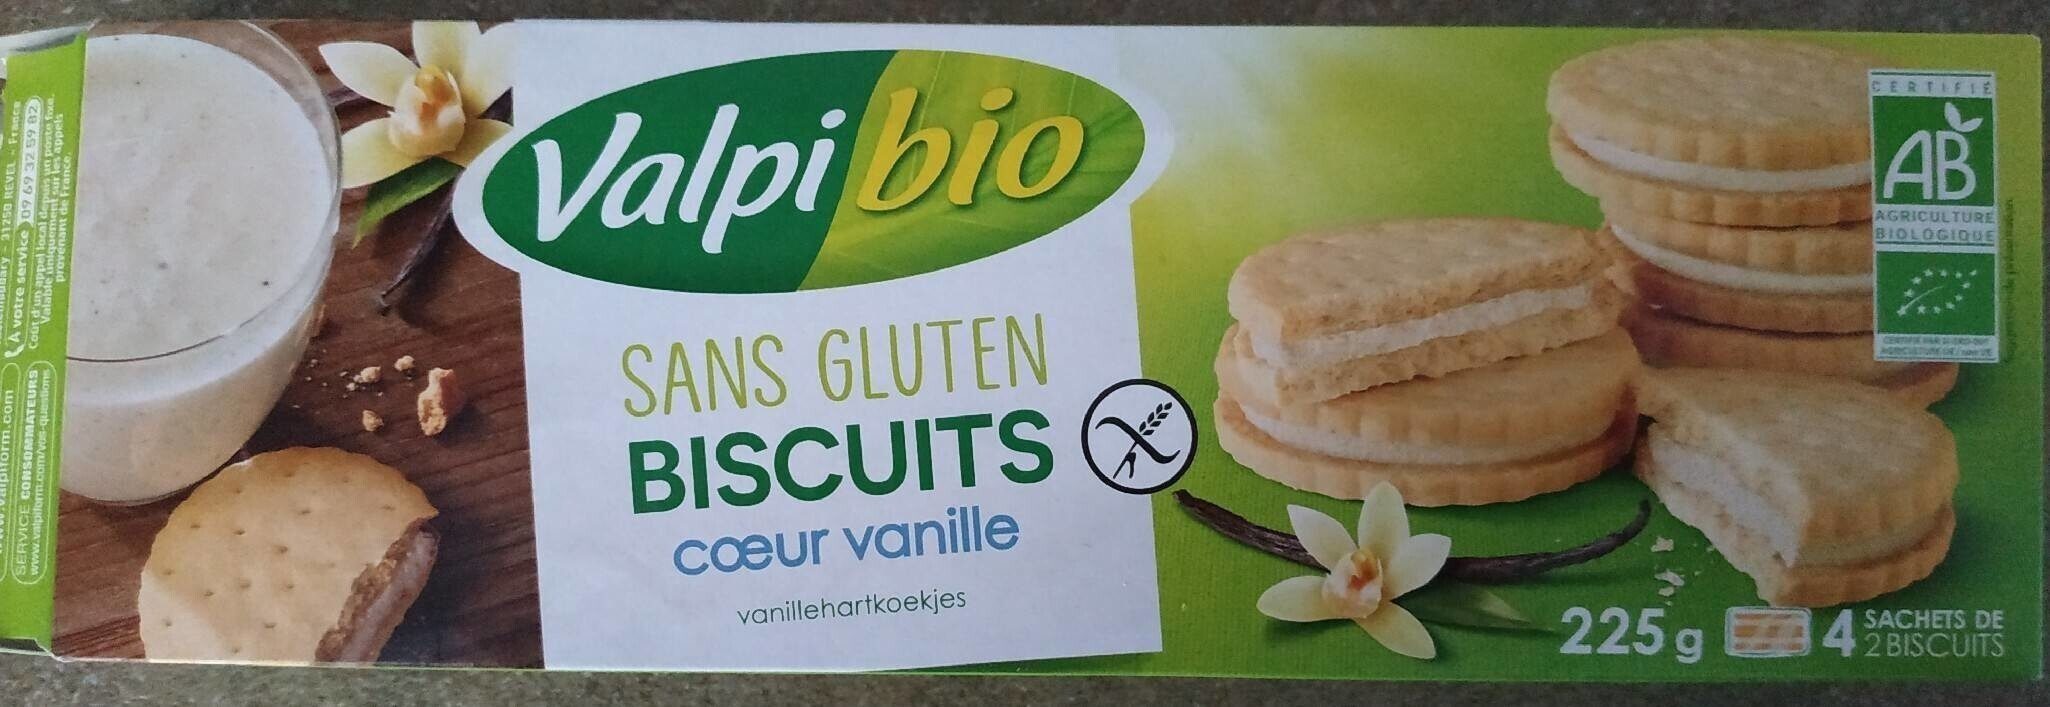 Biscuits cœur vanille - Produit